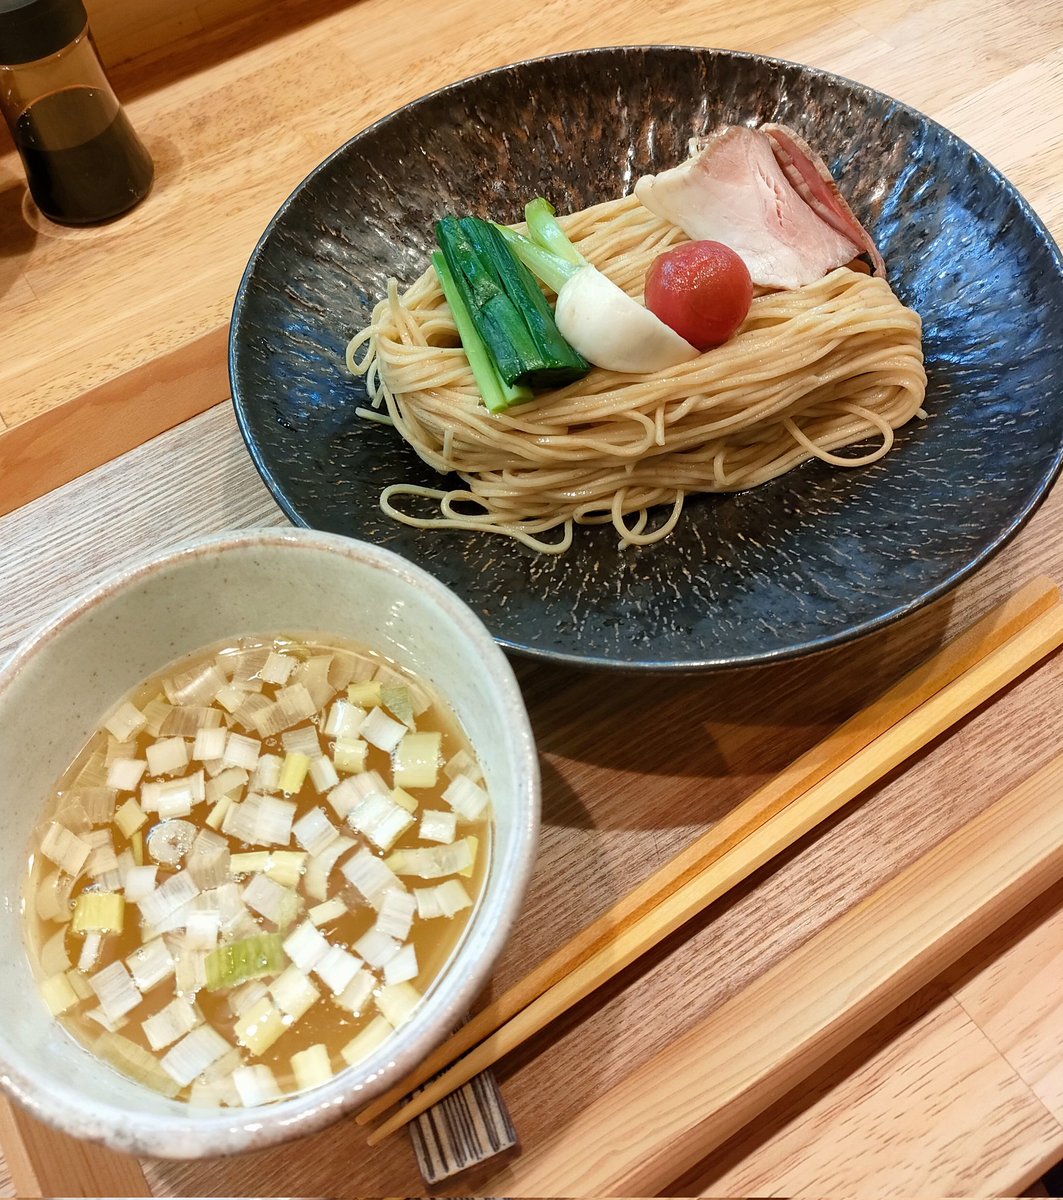 小麦そば池@松本市
地鶏と煮干しのつけそば（限定）
キレのある煮干スープに低加水の細麺の組み合わせがとても美味しい😍具材の野菜も美味しい💯今回の限定も素晴らしい😋